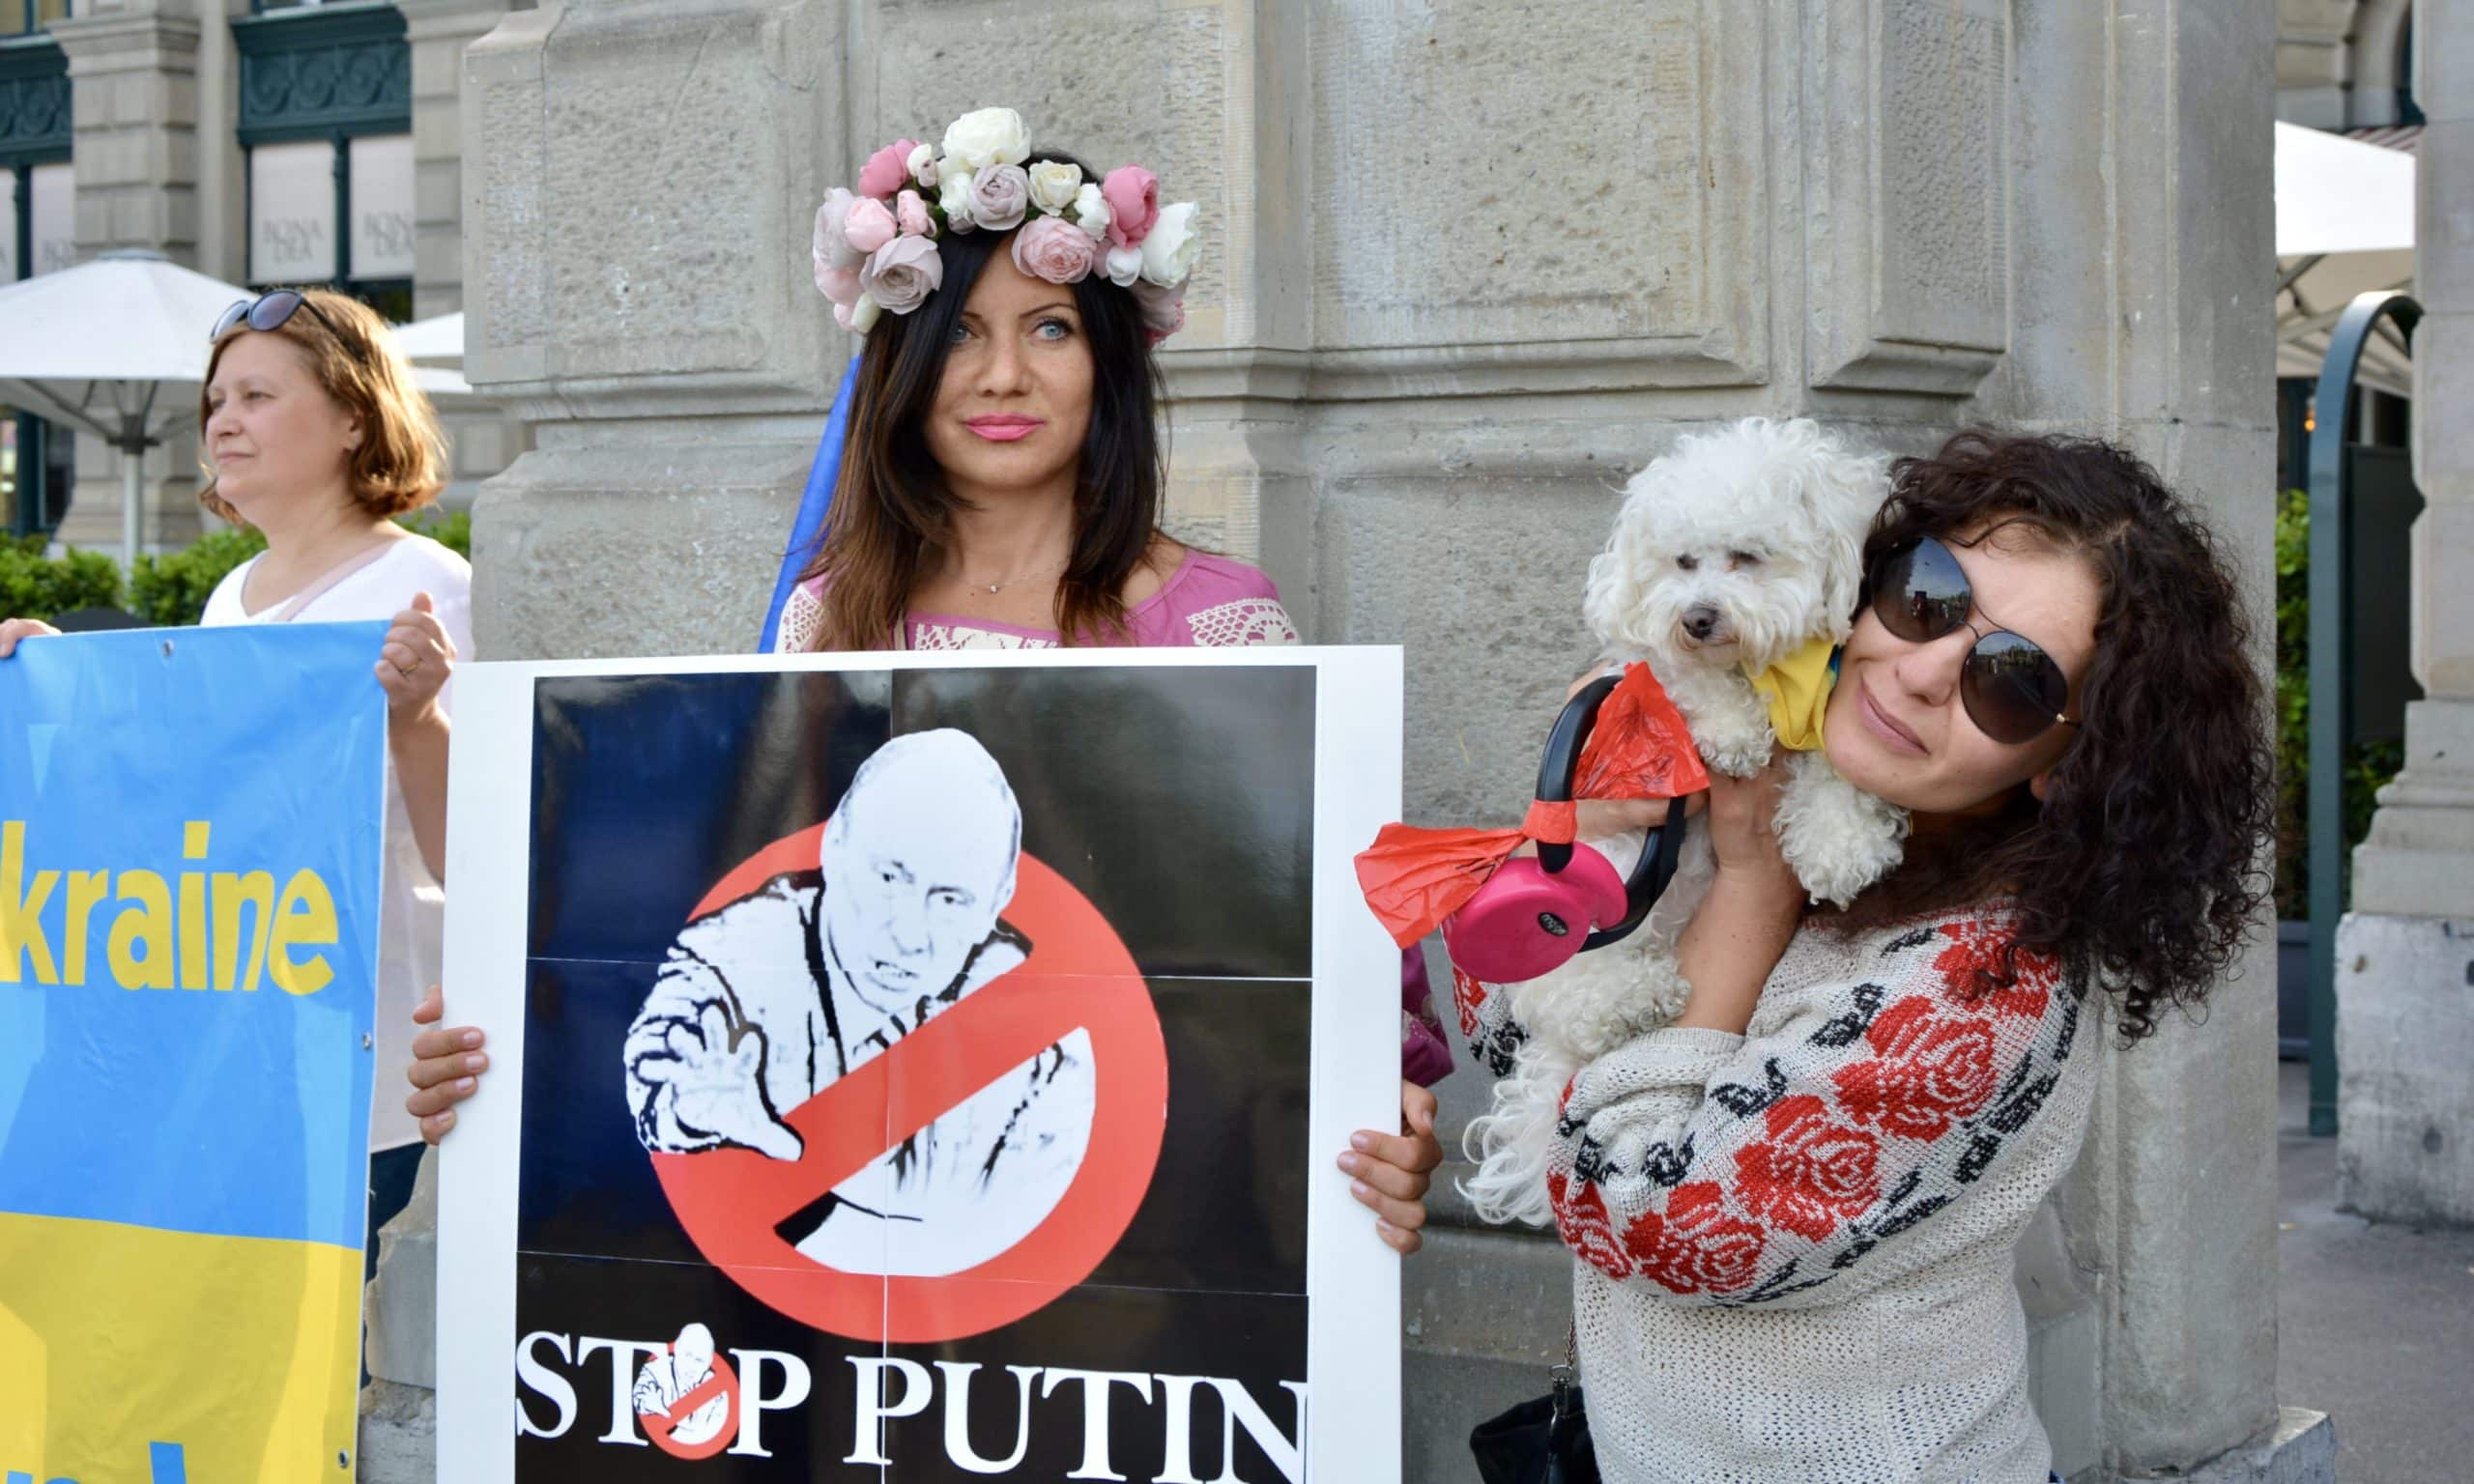 Митинг солидарности с Украиной в Цюрихе в рамках международного движения «Stop Putin - Stop War». 10 июня 2016 г. (© schwingen.net)